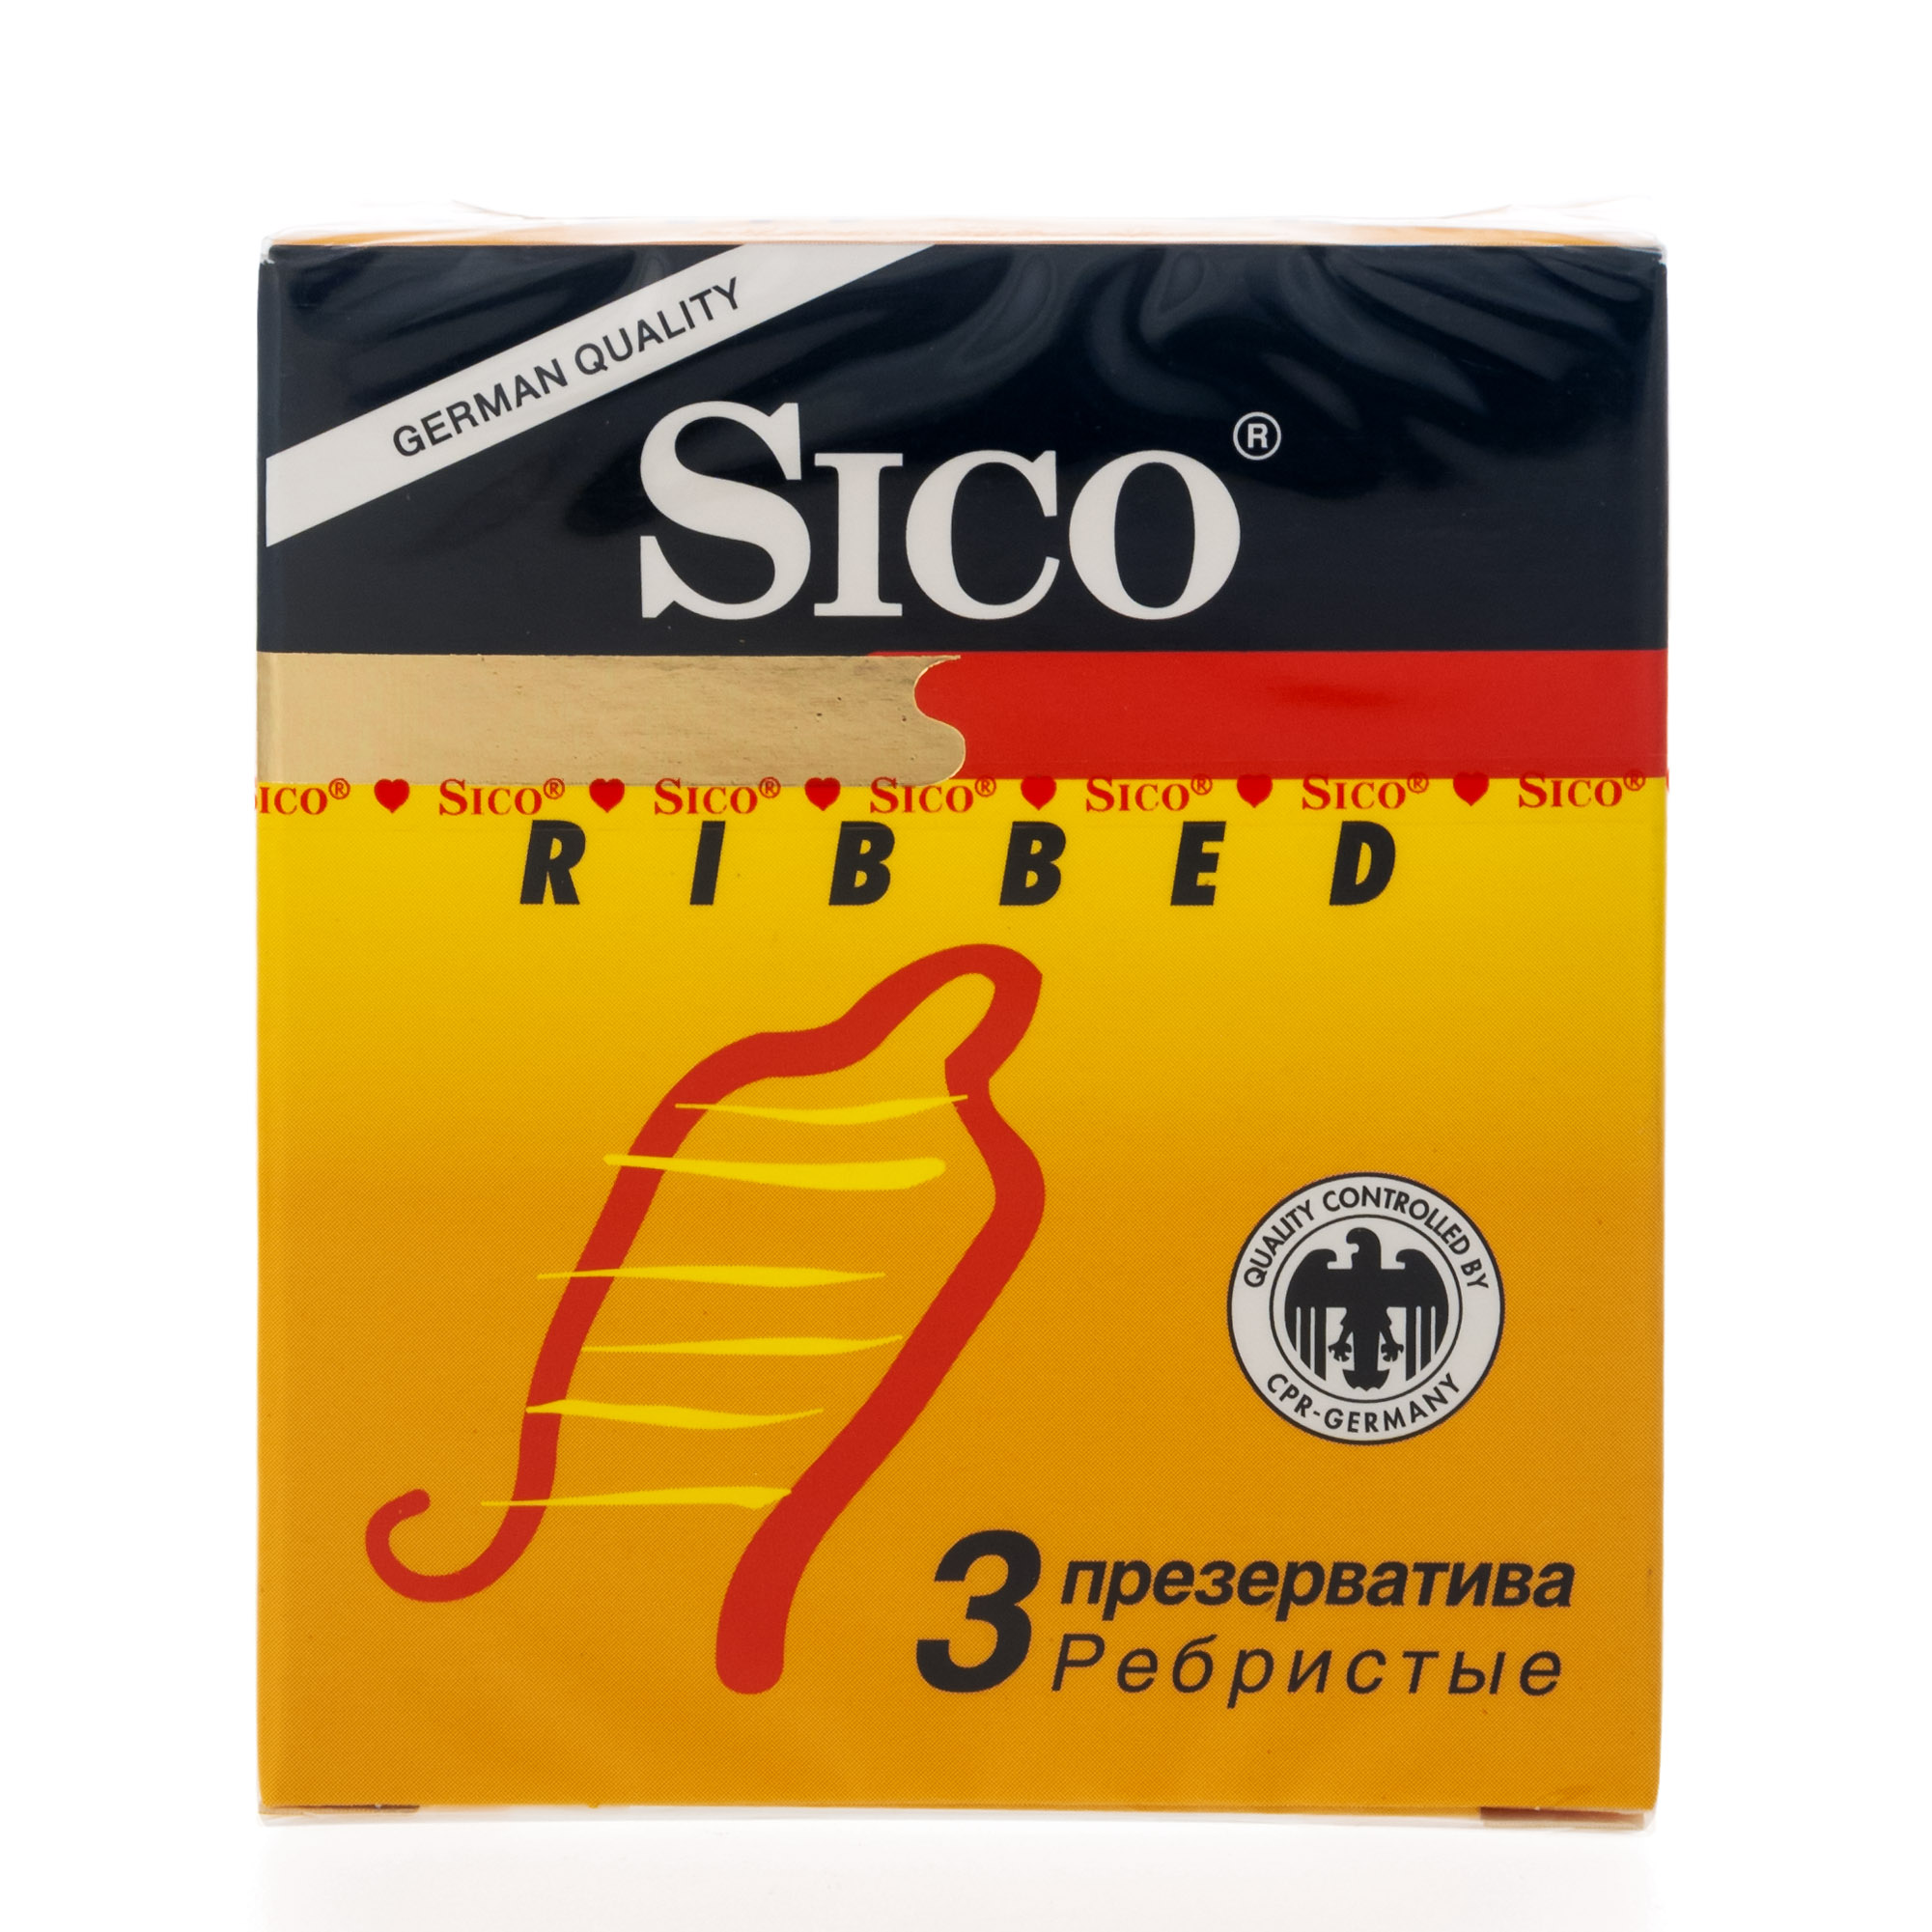 Сико презервативы Риббед ребристые №3 презервативы сико экстра 3 шт